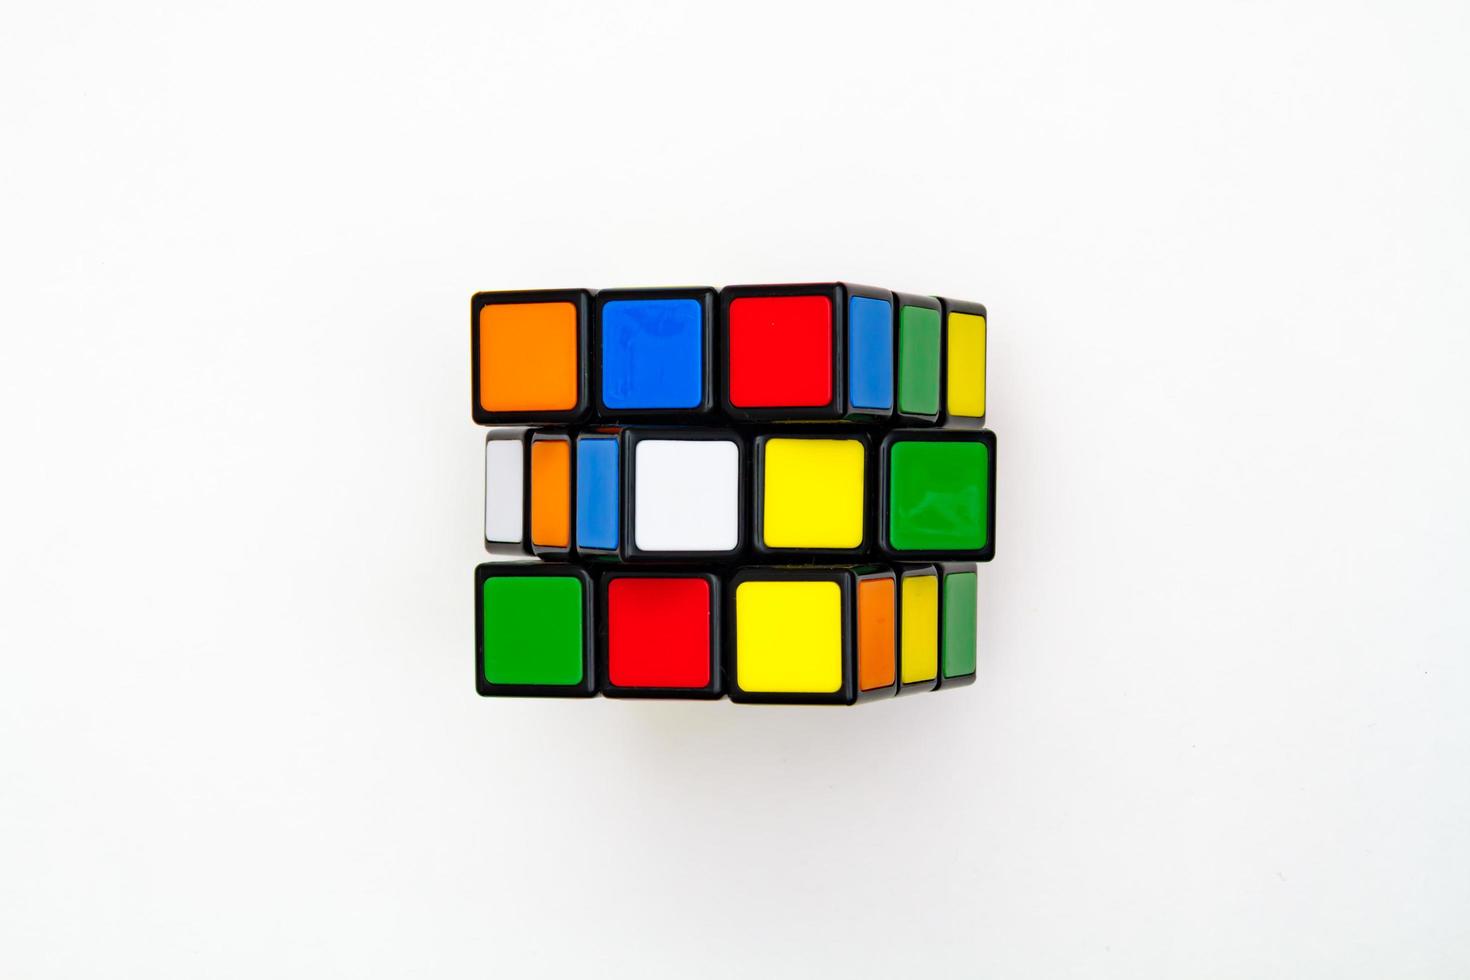 san petersburgo, rusia - 17 de julio de 2019 - cubo de rubik, vista superior del cubo de rubik aislado, cubo de rubik sobre fondo blanco, rompecabezas de colores, problema matemático, cargando por tu cerebro, paleta de arcoíris en forma de cubo foto